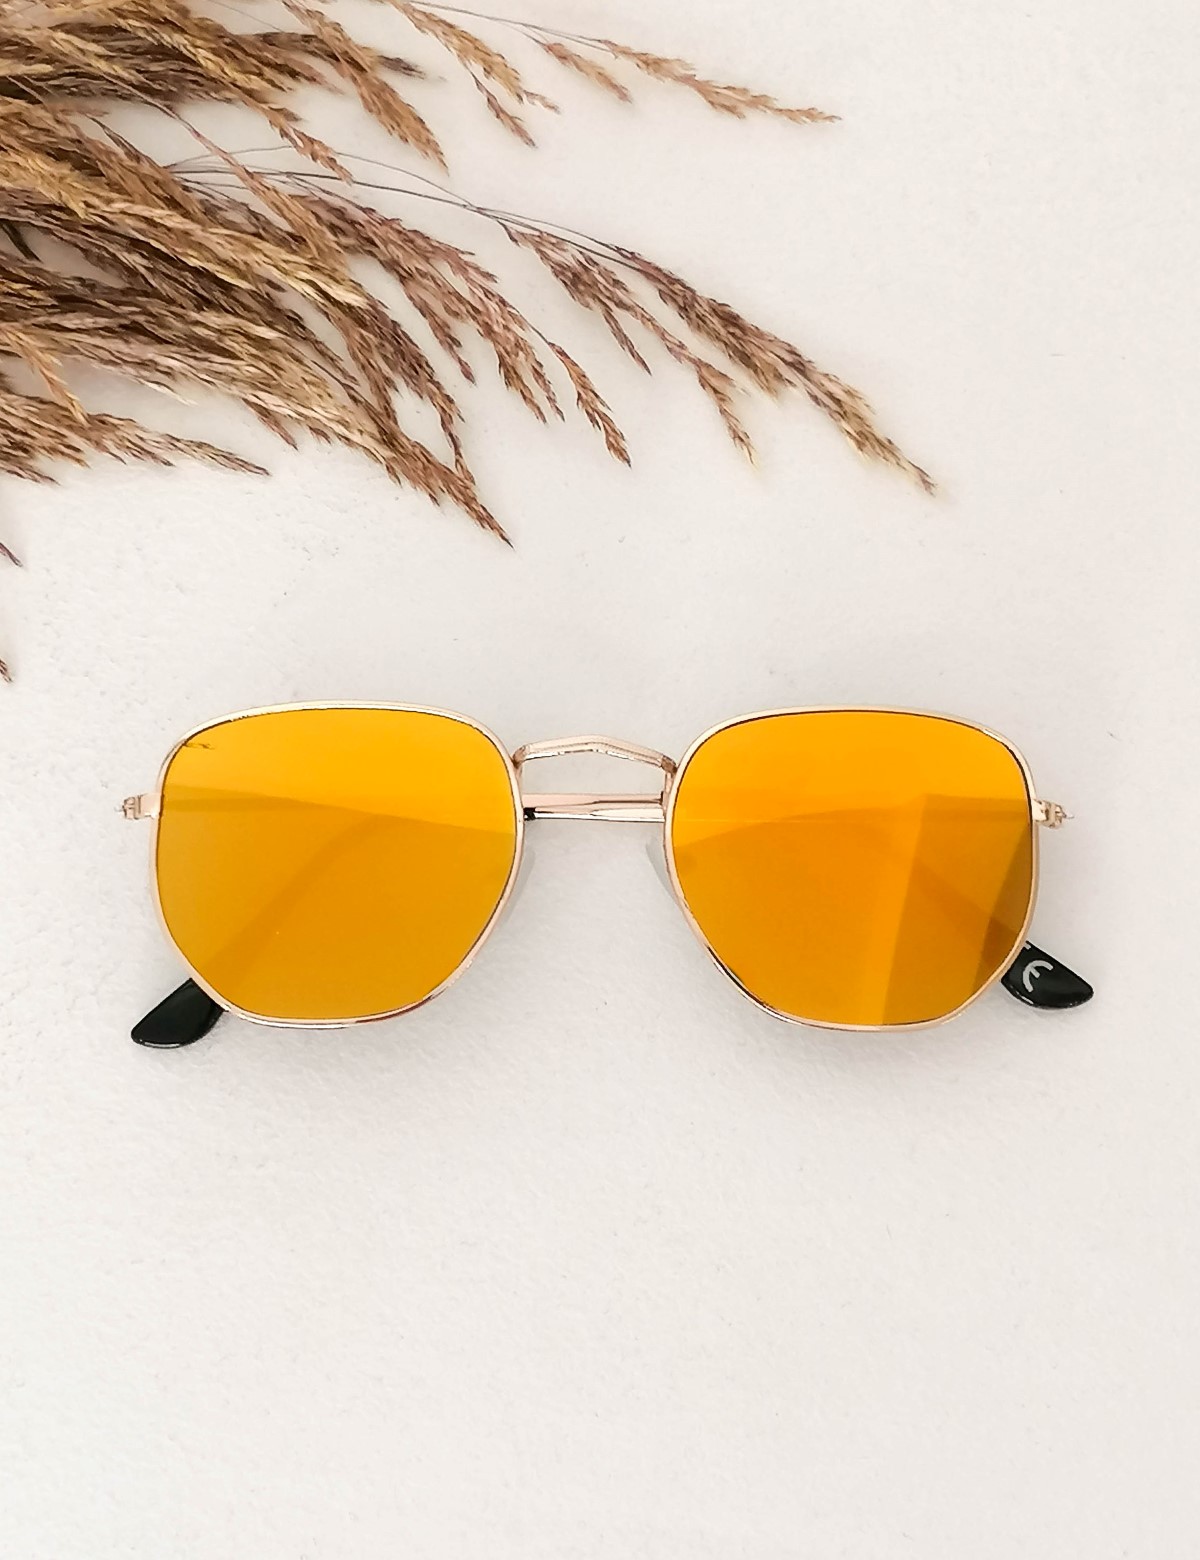 Γυναικεία χρυσό πολύγωνα γυαλιά ηλίου καθρέπτης με χρυσό σκελετό Luxury LS3065G